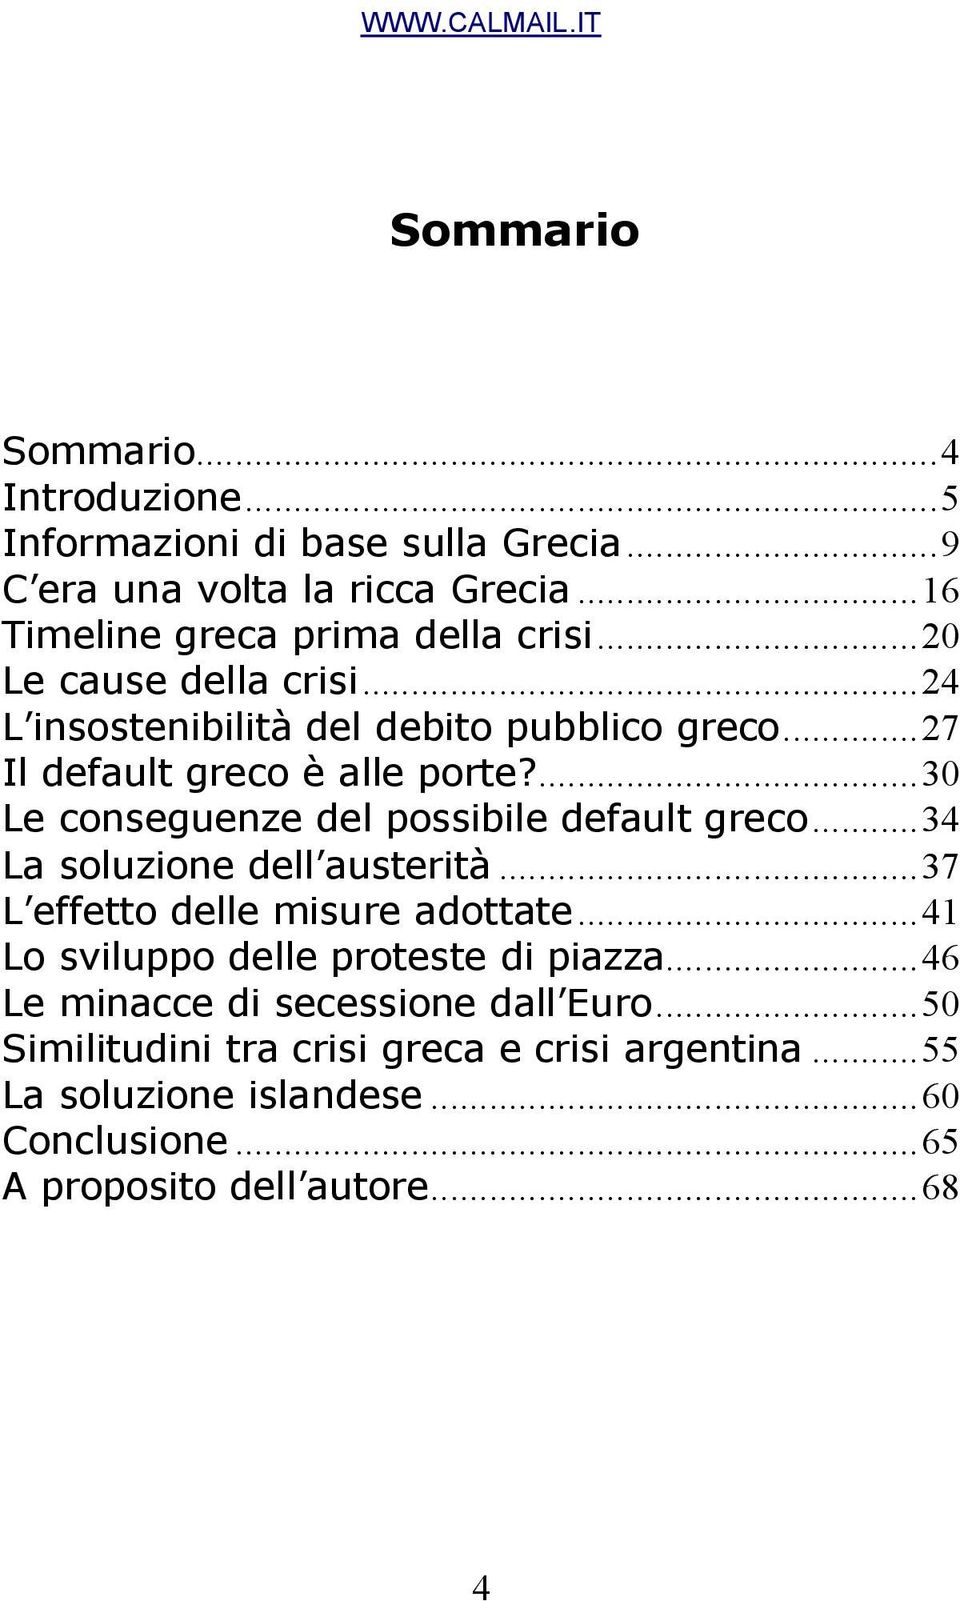 ...30 Le conseguenze del possibile default greco...34 La soluzione dell austerità...37 L effetto delle misure adottate.